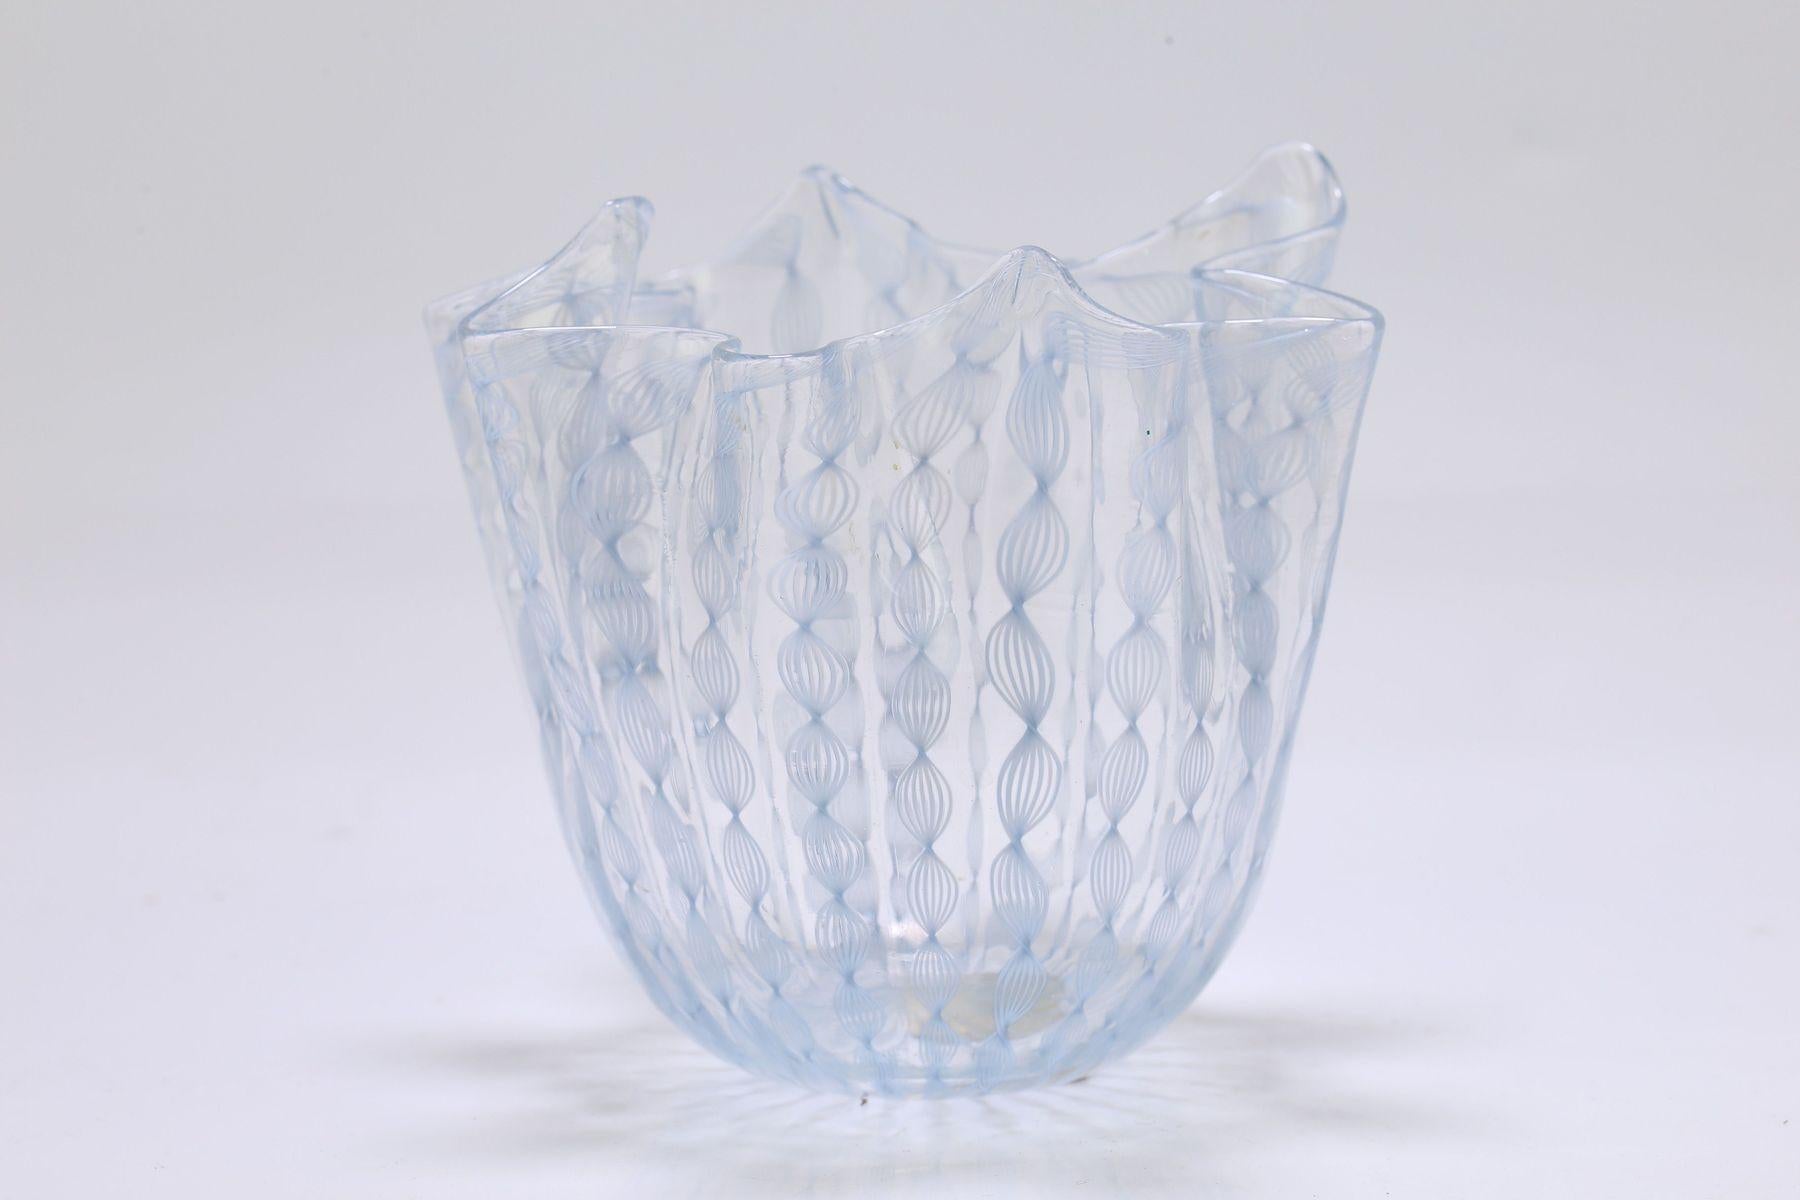 Taschentuchschale/-vase, entworfen von Fulvio Bianconi für Venini, Murano. Diese Fazzoletto-Schale aus Zanfirico-Glas mit vertikalem Gitter aus weißem Netz und hellblauen Bändern zeigt eine Technik, die auf das 16. Jahrhundert in Murano zurückgeht.